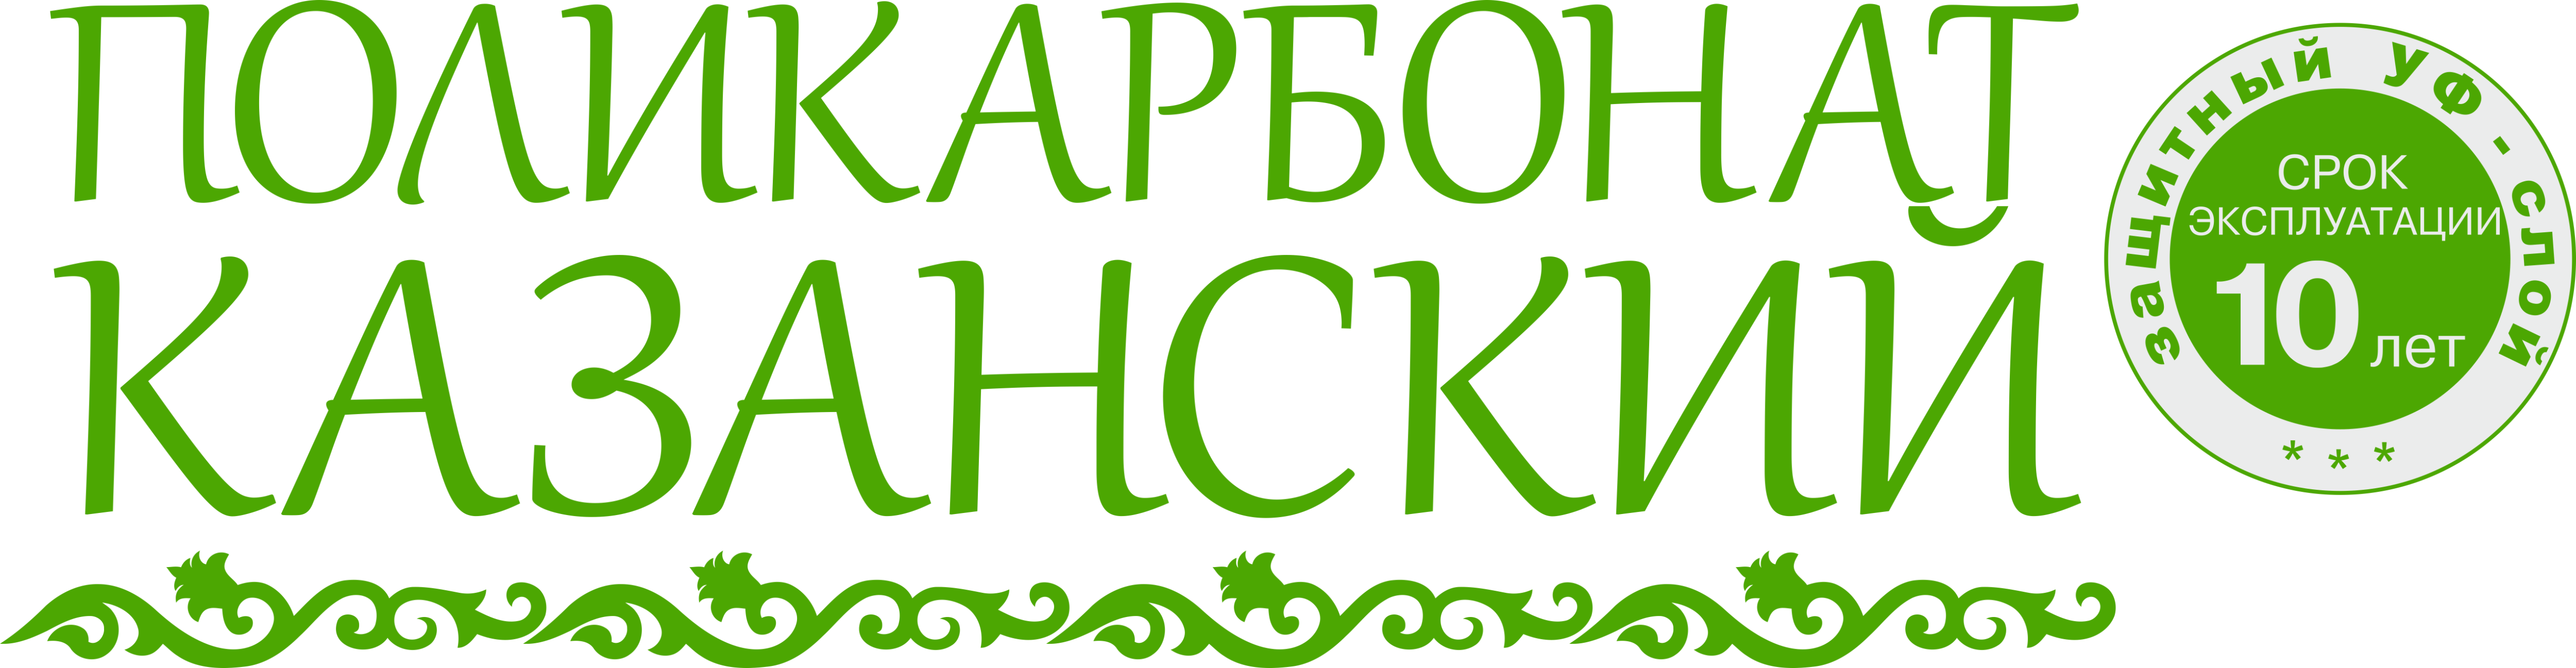 kazanskiy-logo-seryy